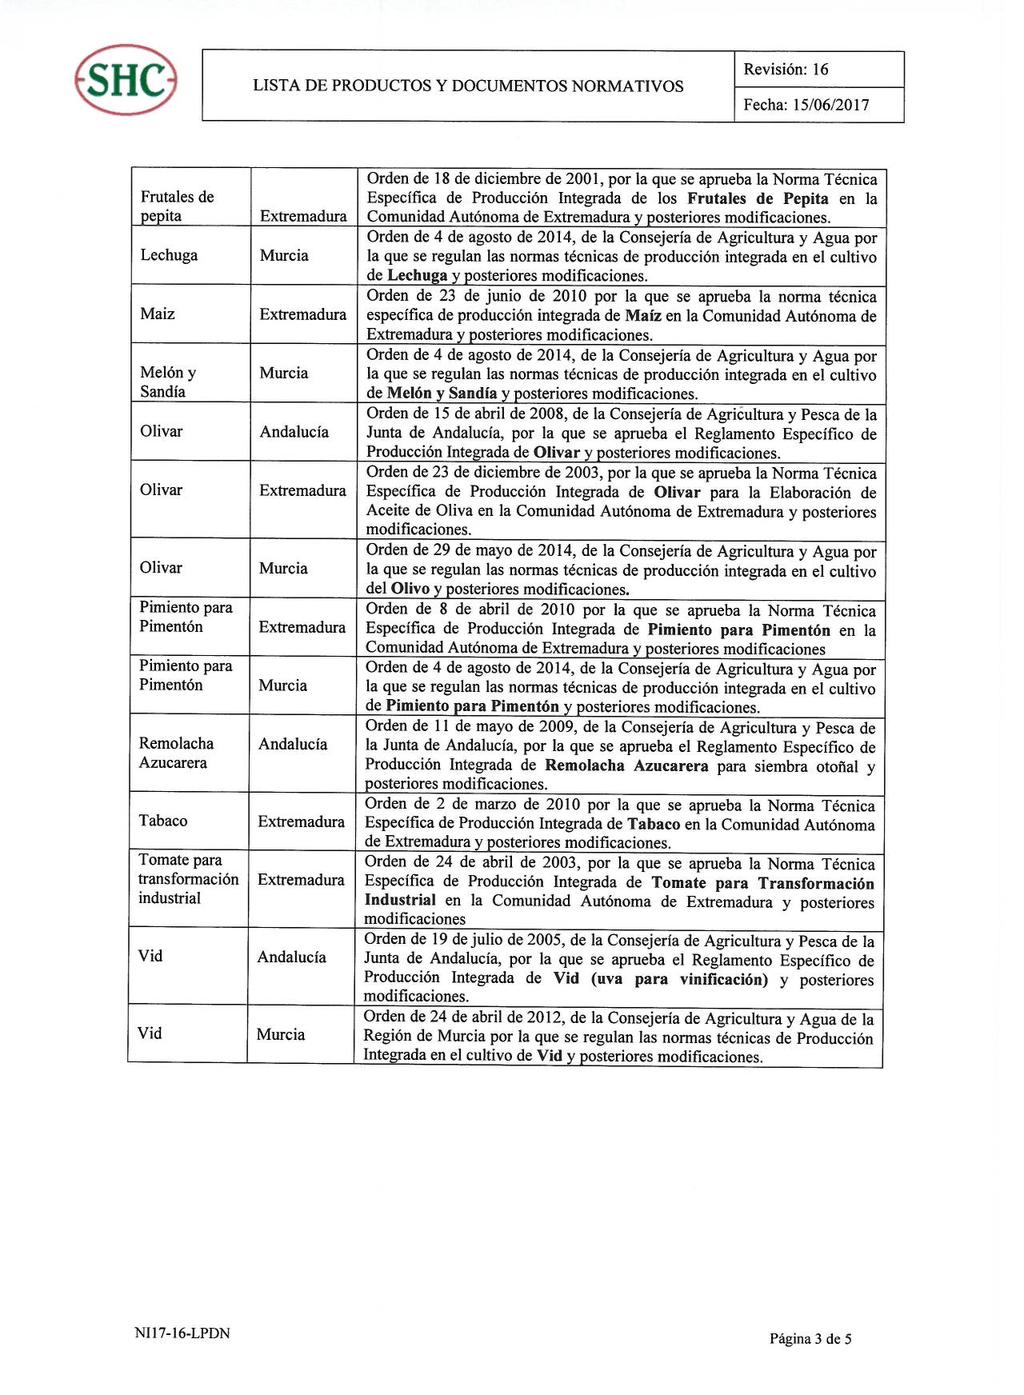 Orden de 18 de diciembre de 2001, por la que se aprueba la Norma Técnica Frutales de Especifica de Producción Integrada de los Frutales de Pepita en la pepita Extremadura Comunidad Autónoma de